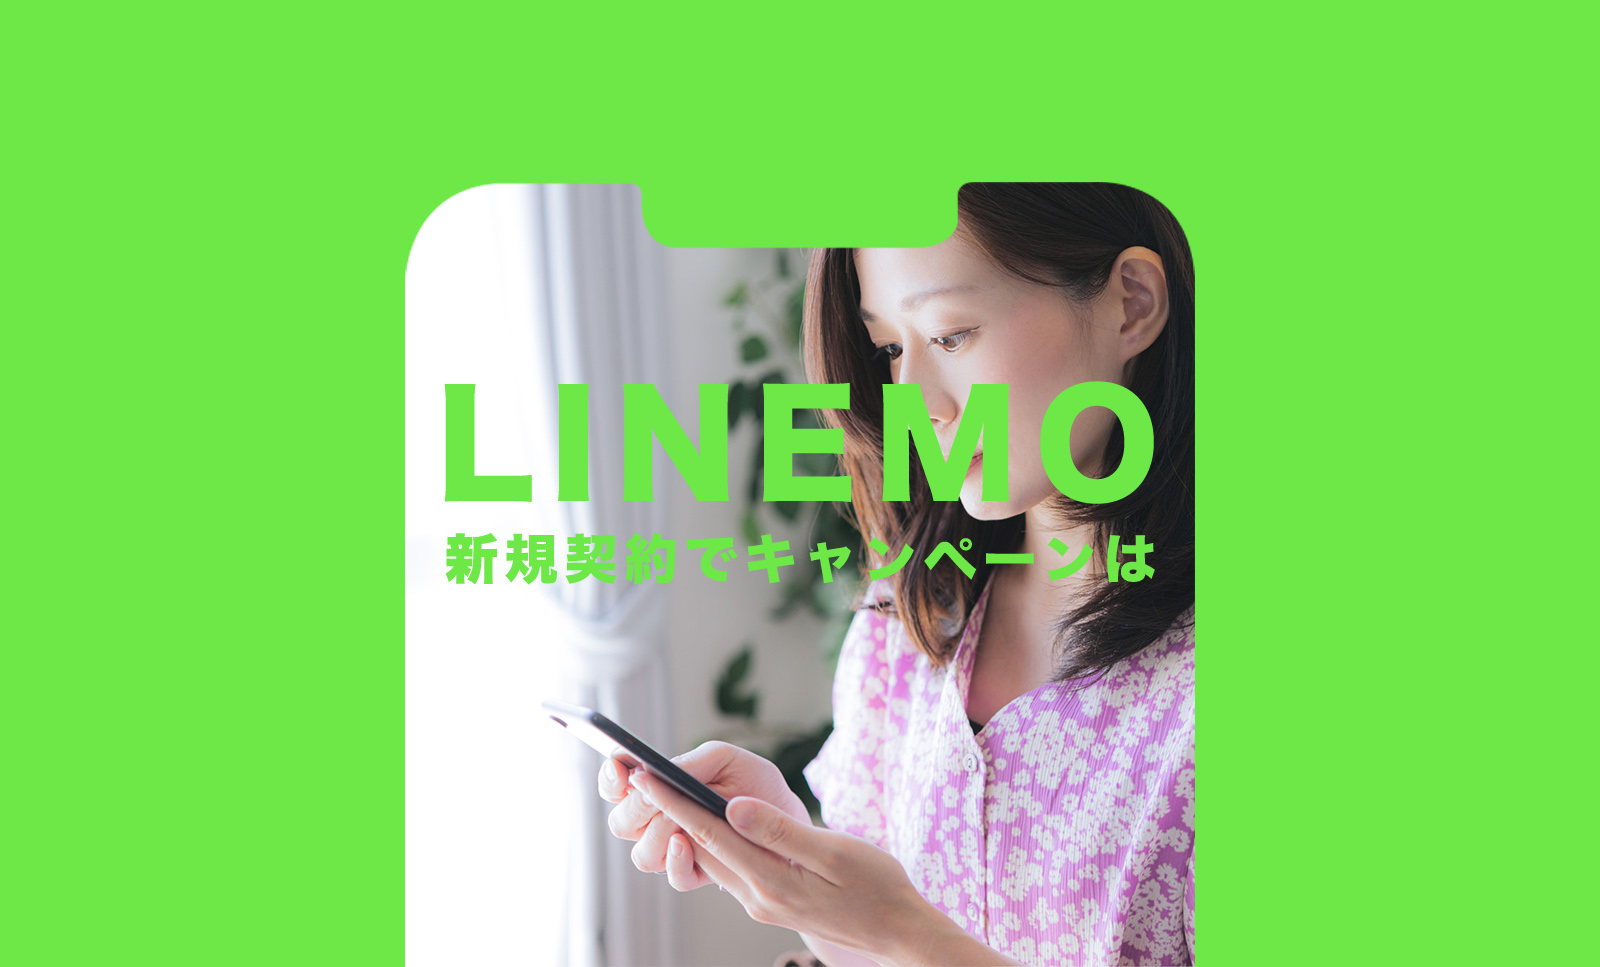 【終了済】LINEMO(ラインモ)のキャンペーンで3000円相当分が新規契約でもらえる詳細を解説のサムネイル画像